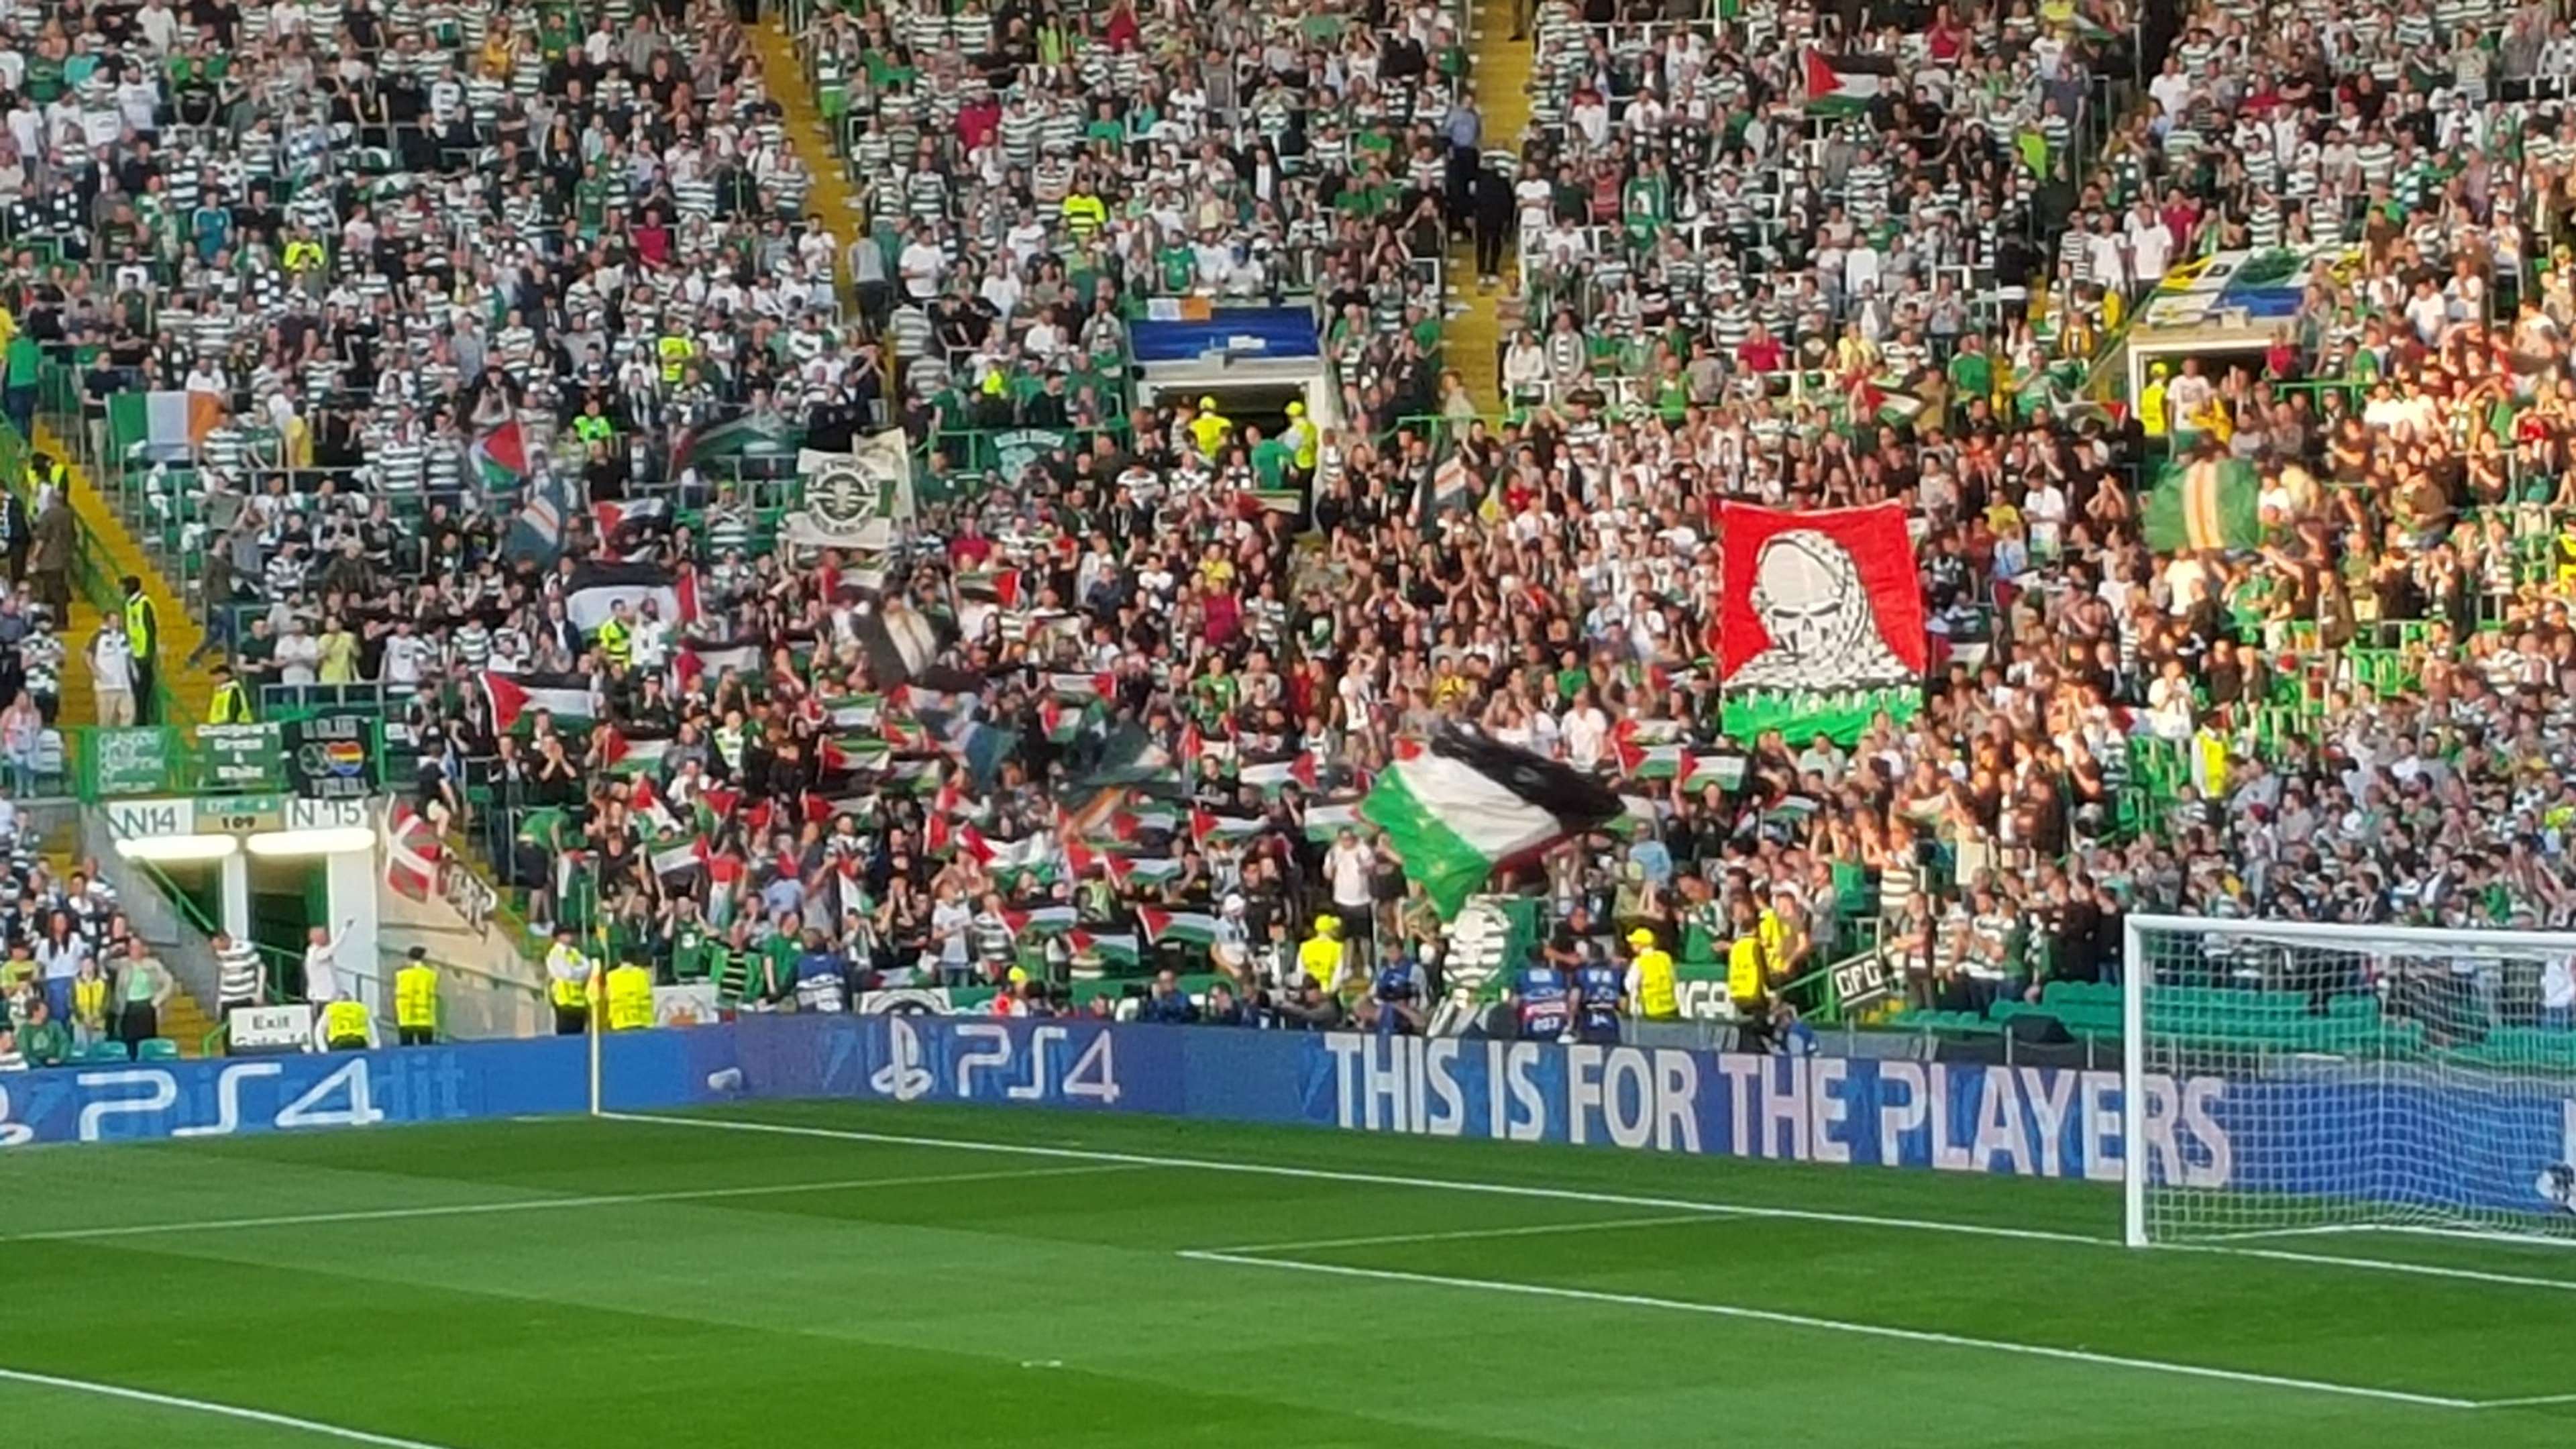 Celtic fans Palestine flags